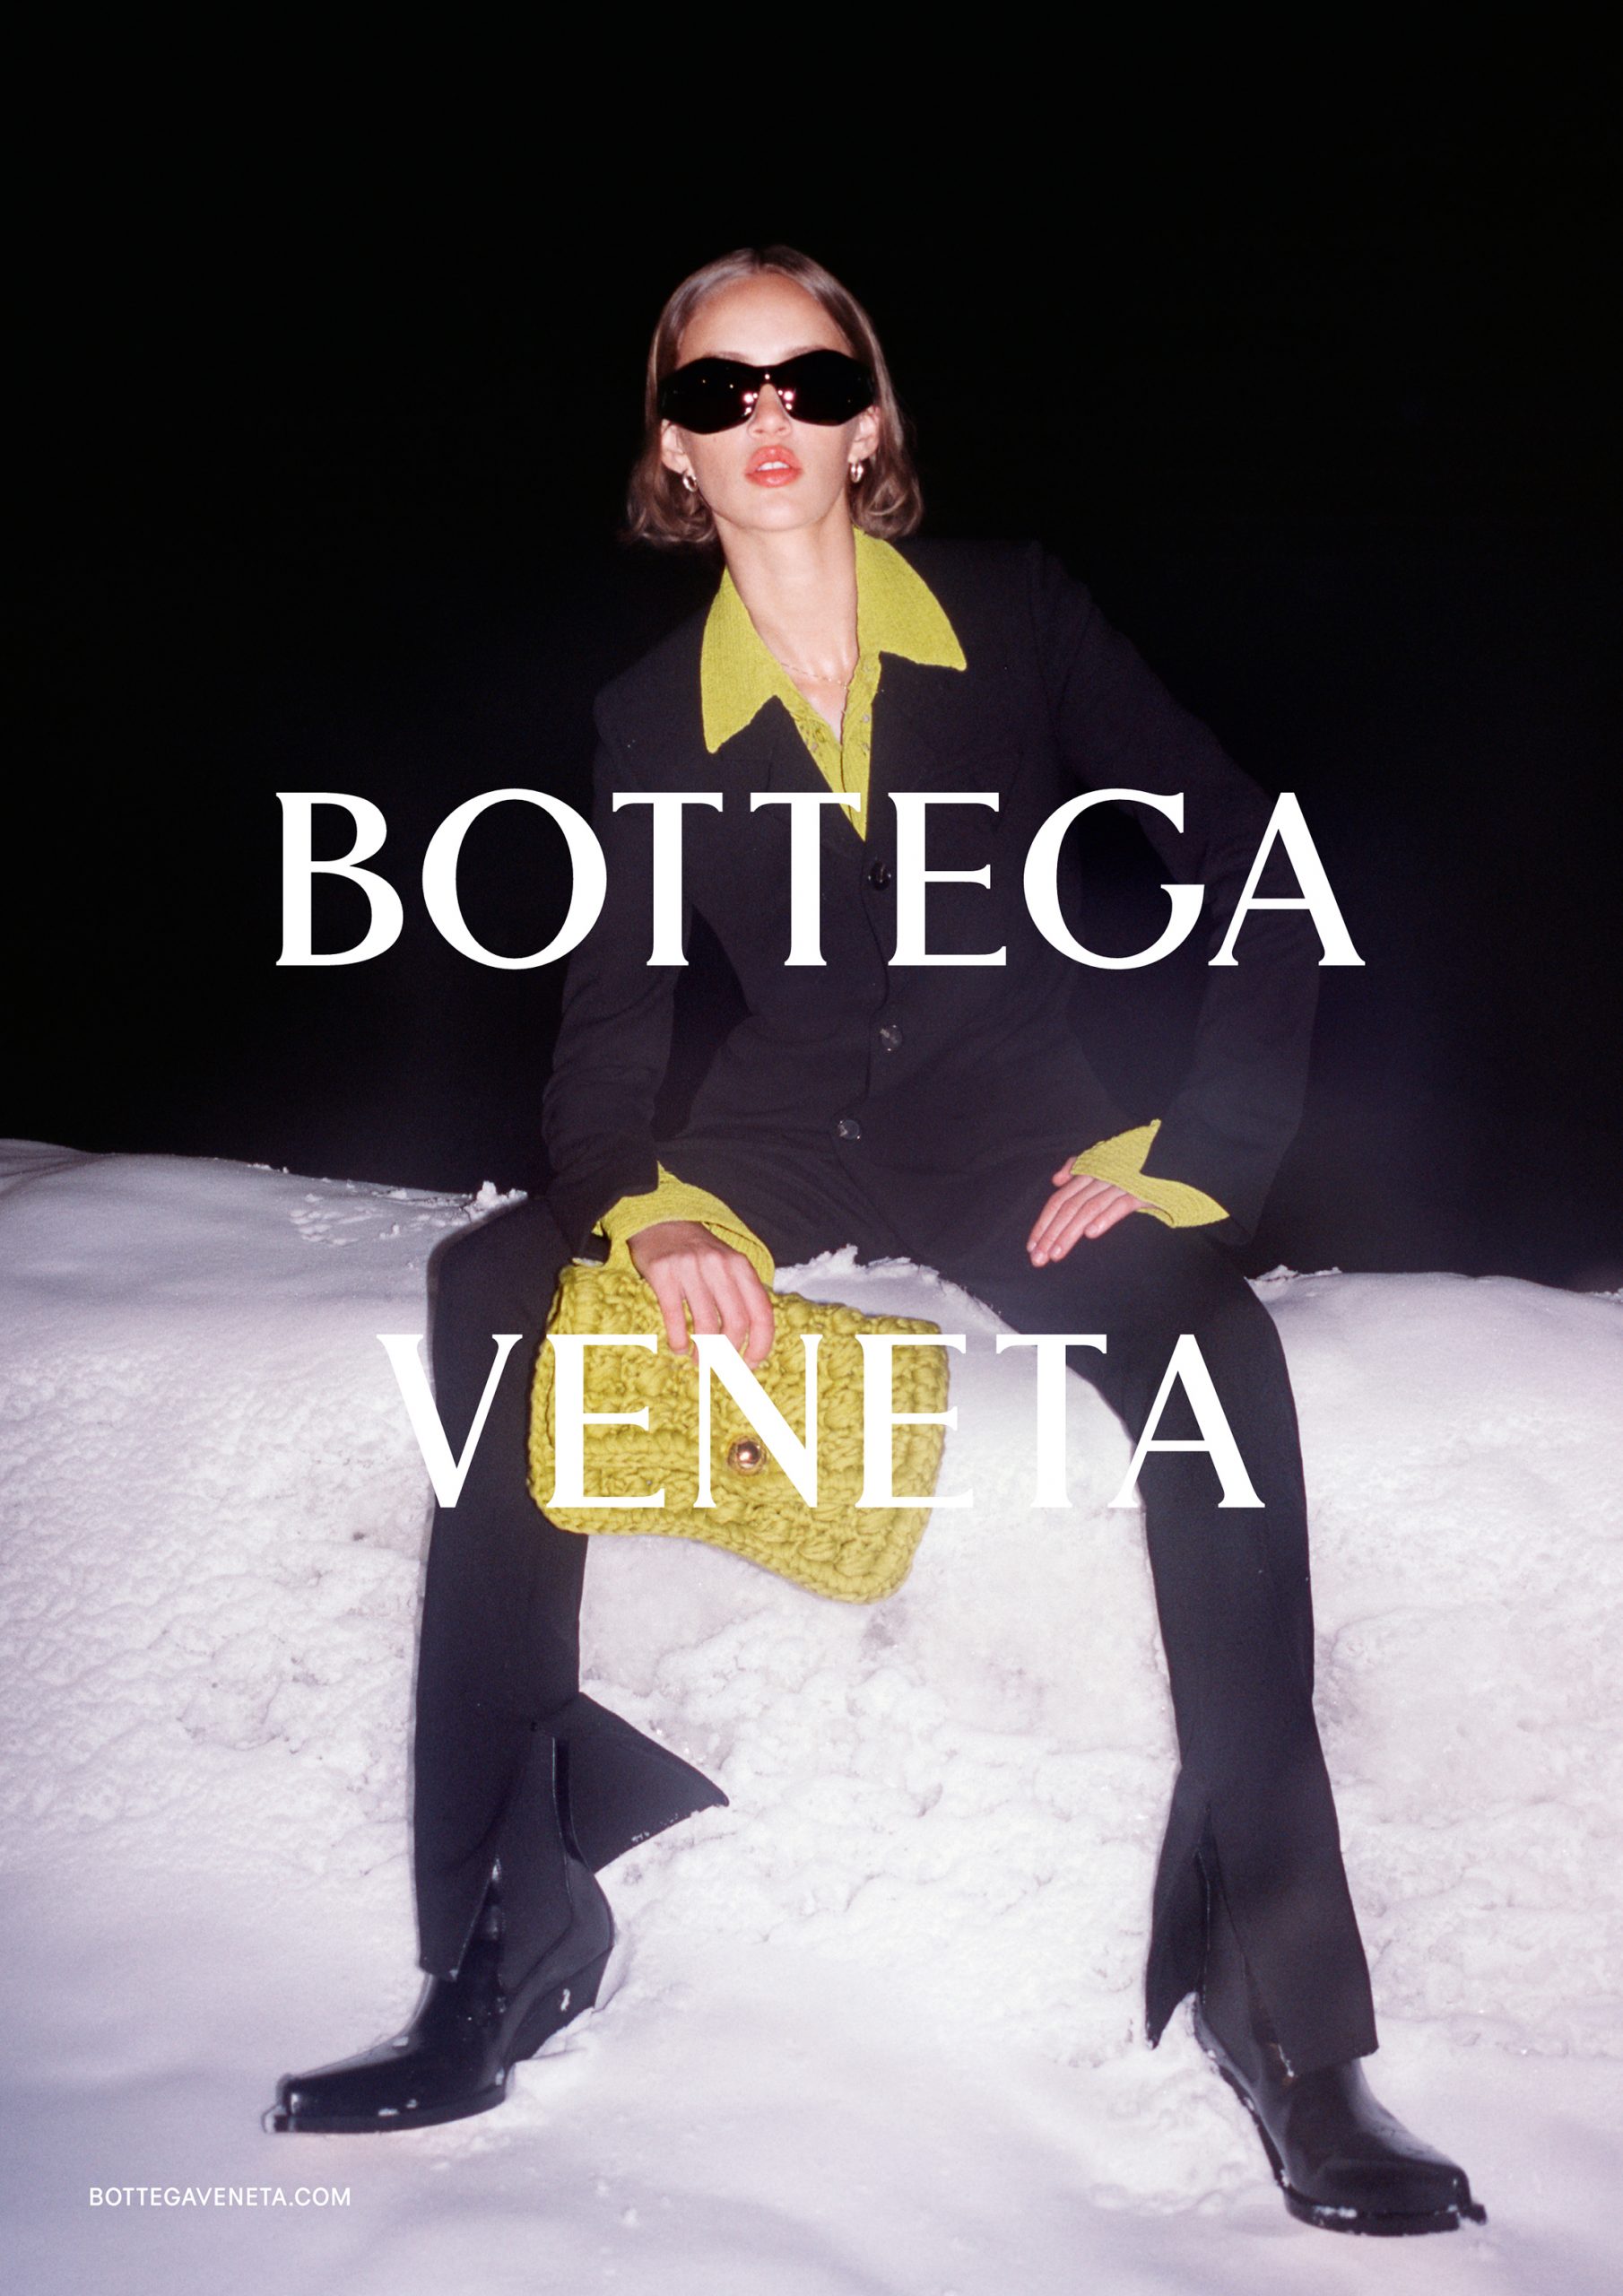 Bottega Veneta - The Impression